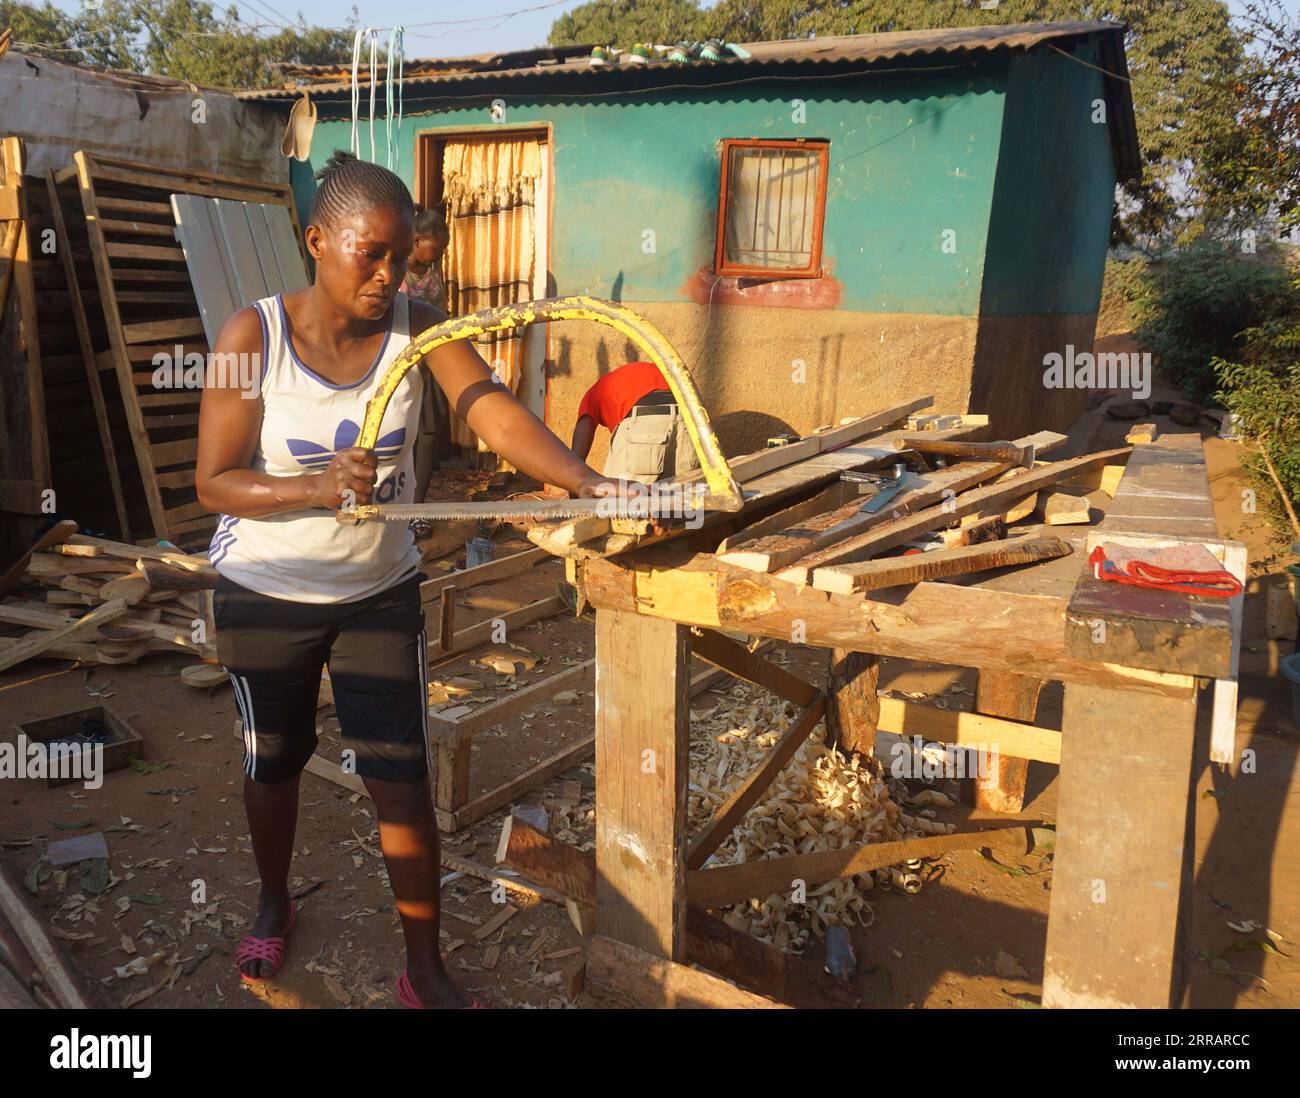 210814 -- NDOLA SAMBIA, 14. August 2021 -- Beatrice Nanyangwe, eine Zimmerfrau, stellt am 7. August 2021 Möbel in Ndola, der Hauptstadt der Provinz Copperbelt, Sambia, her. Nanyangwe, die ihren Sitz in Ndolas Chipulukusu-Komplex hat, stellt seit über einem Jahr eine Reihe von Möbelstücken her, die sie nach einer Ausbildung in Tischlerei und Tischlerei in einer Justizvollzugsanstalt vor einigen Jahren in Lusaka, der sambischen Hauptstadt, begann. Foto von /Xinhua TO GO WITH Feature: Sambische Frau inspiriert andere, sich in Felder zu wagen, die von Männern dominiert werden ZAMBIA-NDOLA-ZIMMERFRAU LillianxBanda PUBLICATIONxNOTx Stockfoto